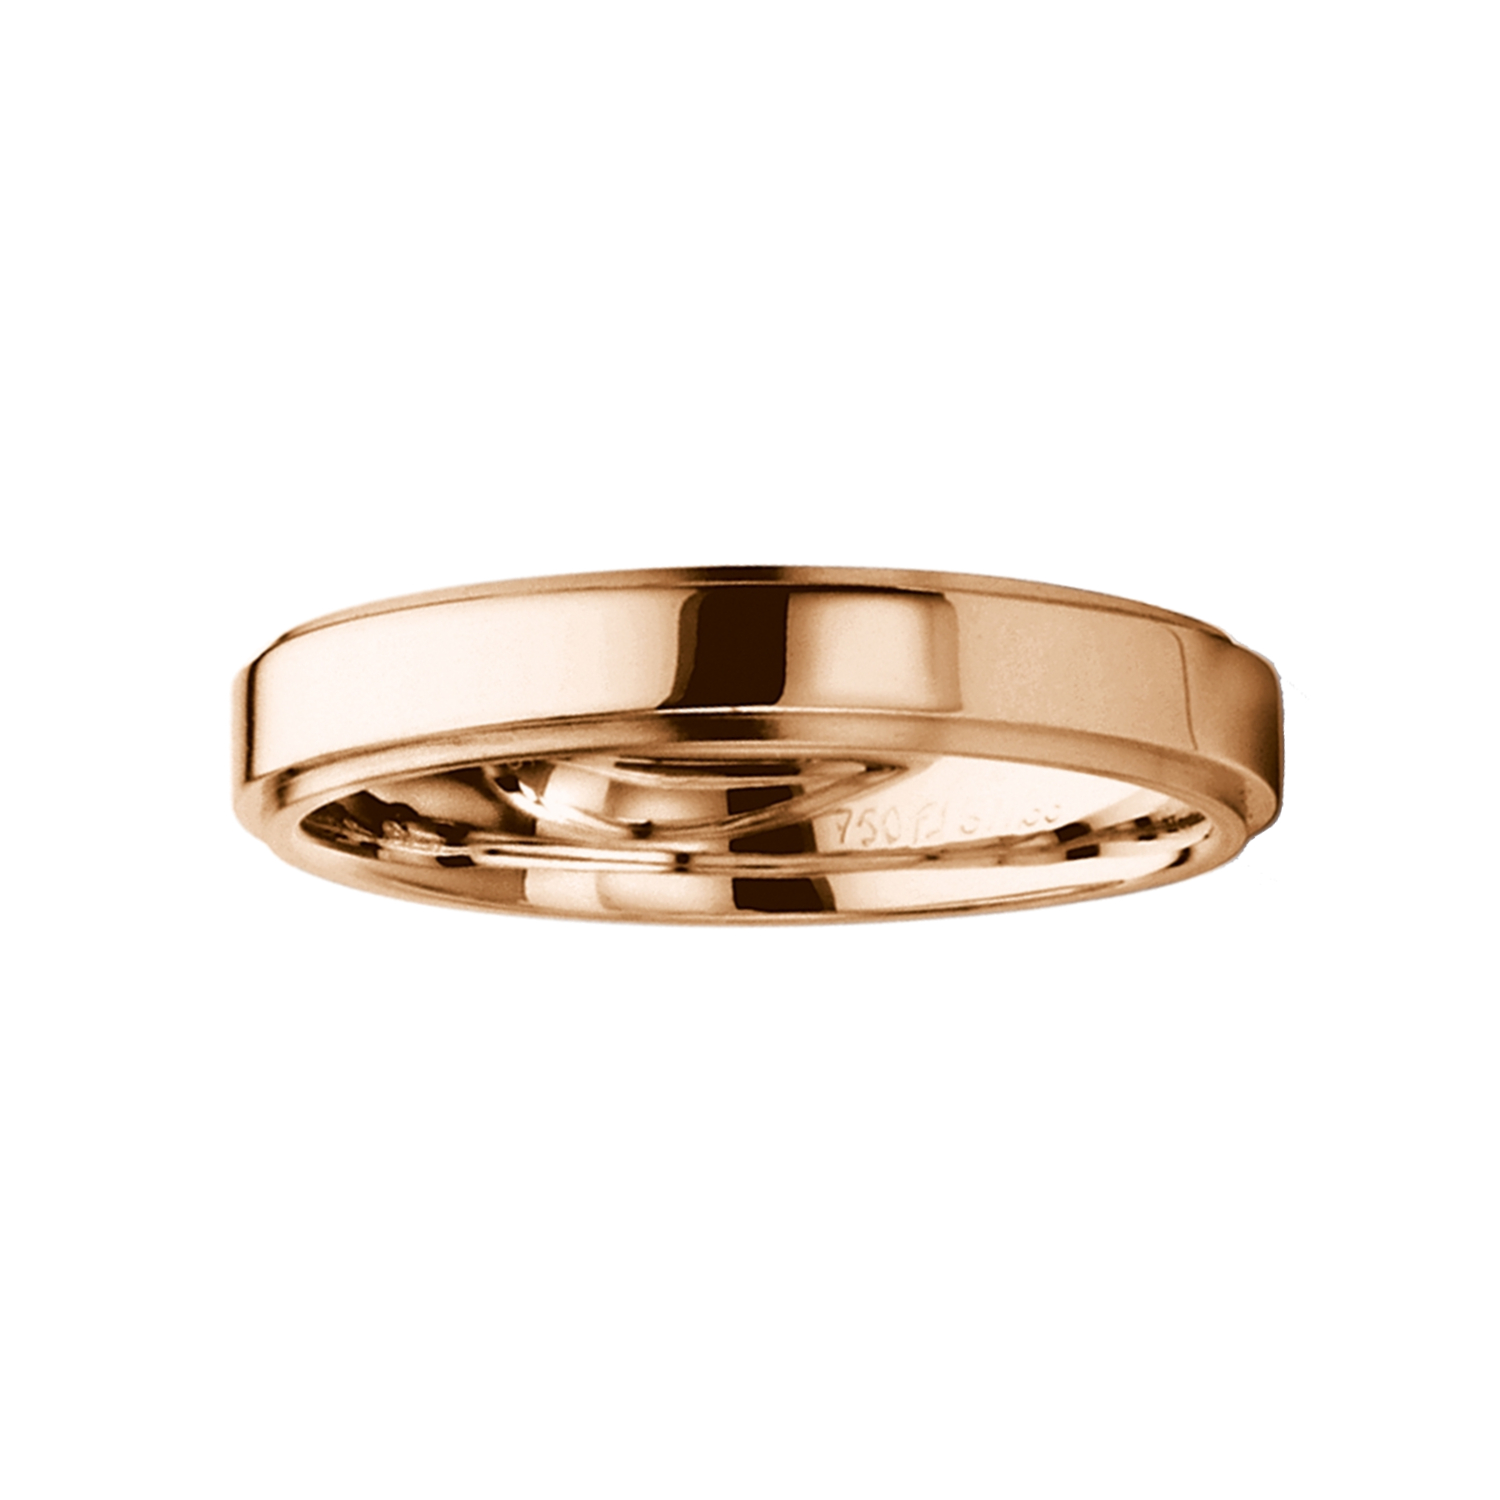  FURRER JACOT, Wedding rings, SKU: 71-28110-0-0/040-73-0-64-0 | watchphilosophy.co.uk